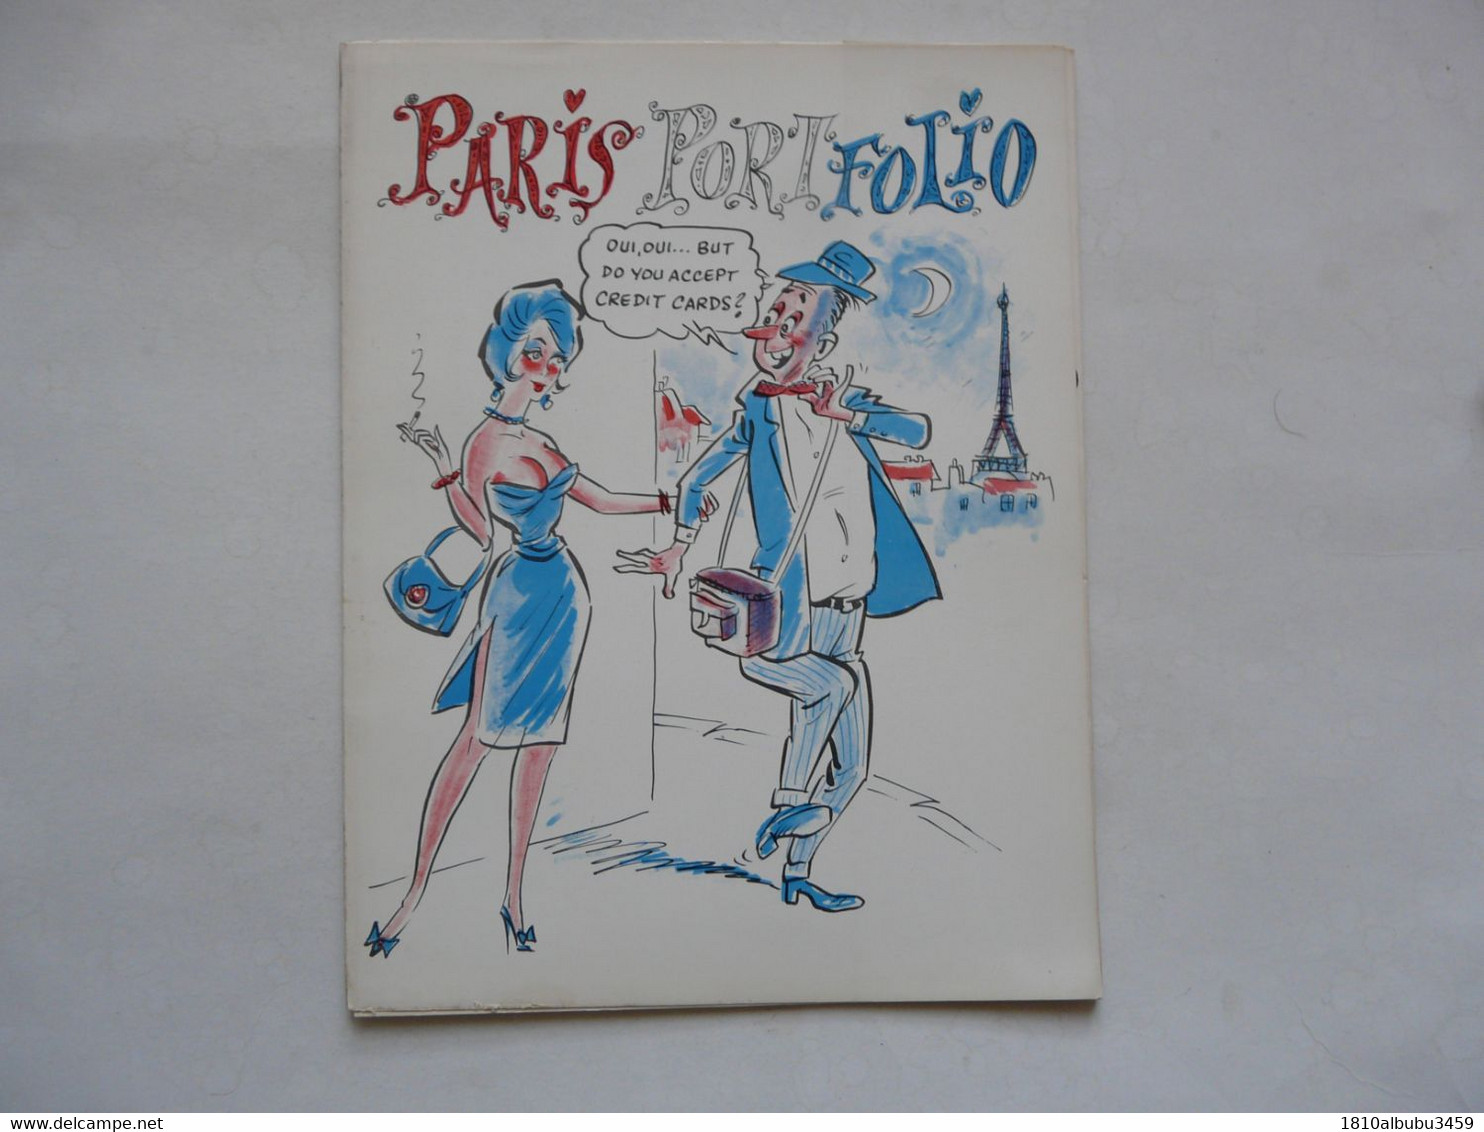 PARIS PORTFOLIO - 10 PARISQUE CARTOONS BY MISHA - Other Publishers